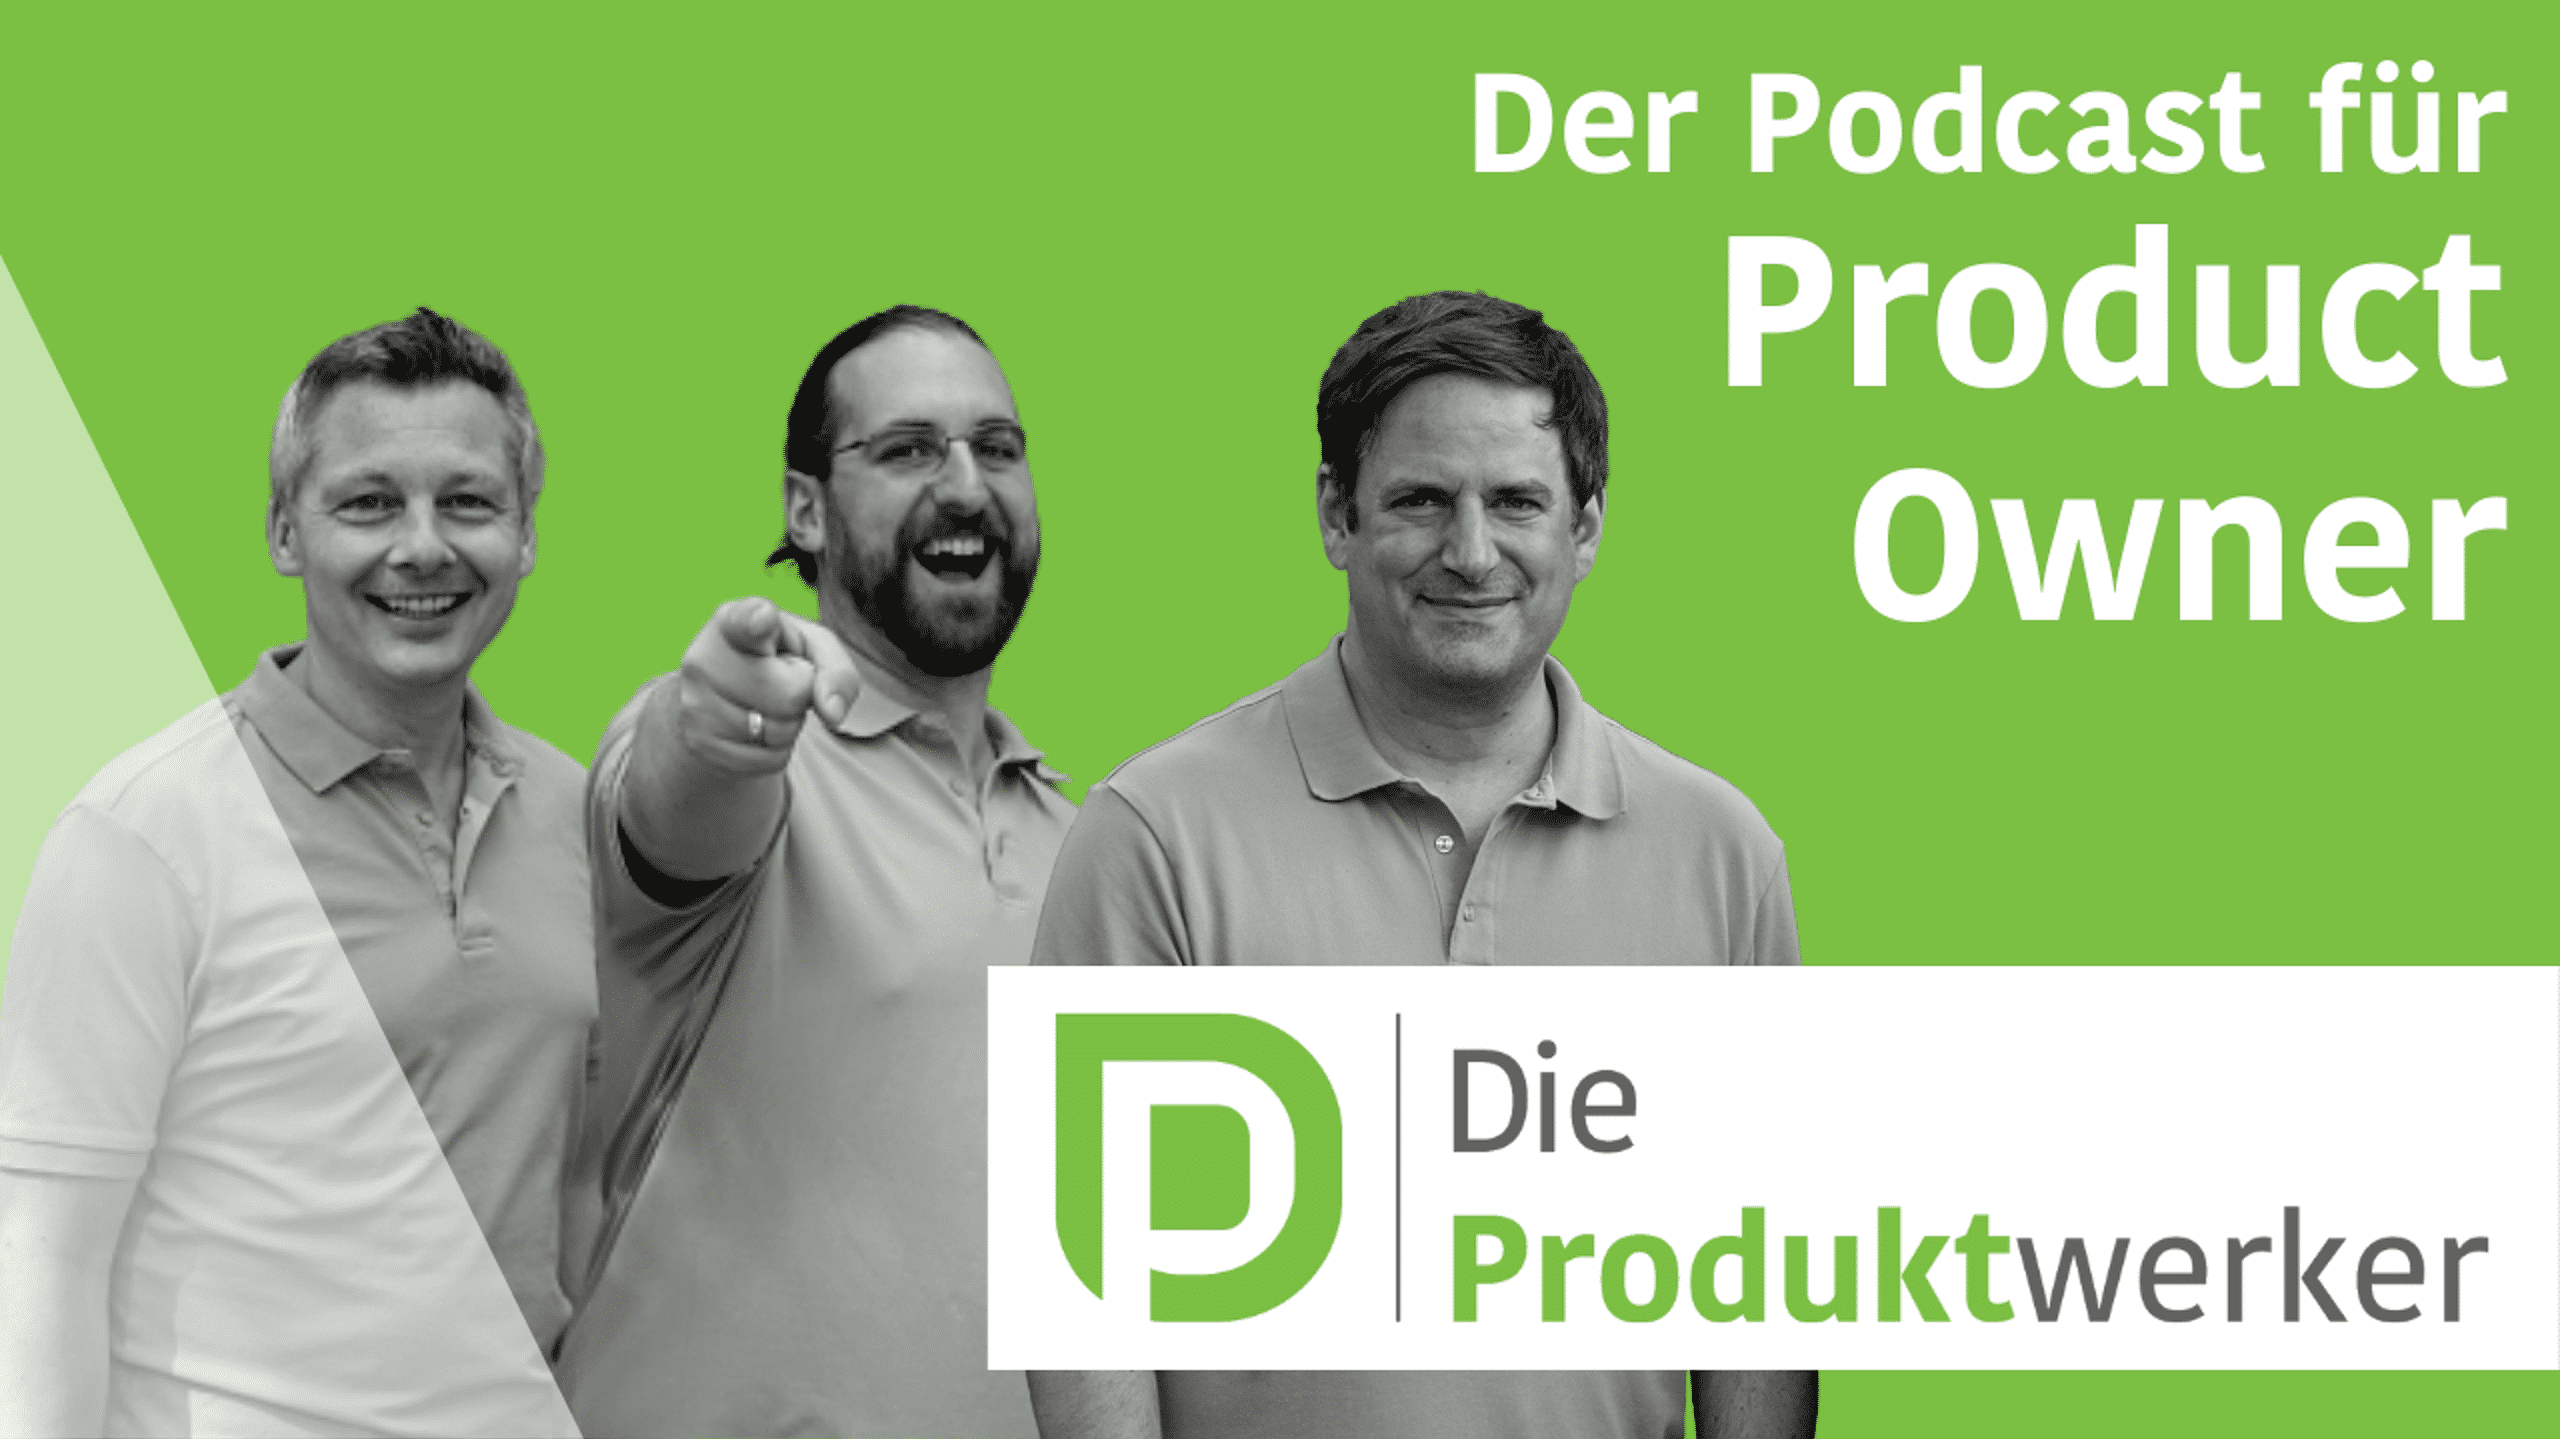 Produktwerker auf einem Bild (3 Männer), dazu Text "Der Podcast für Product Owner"